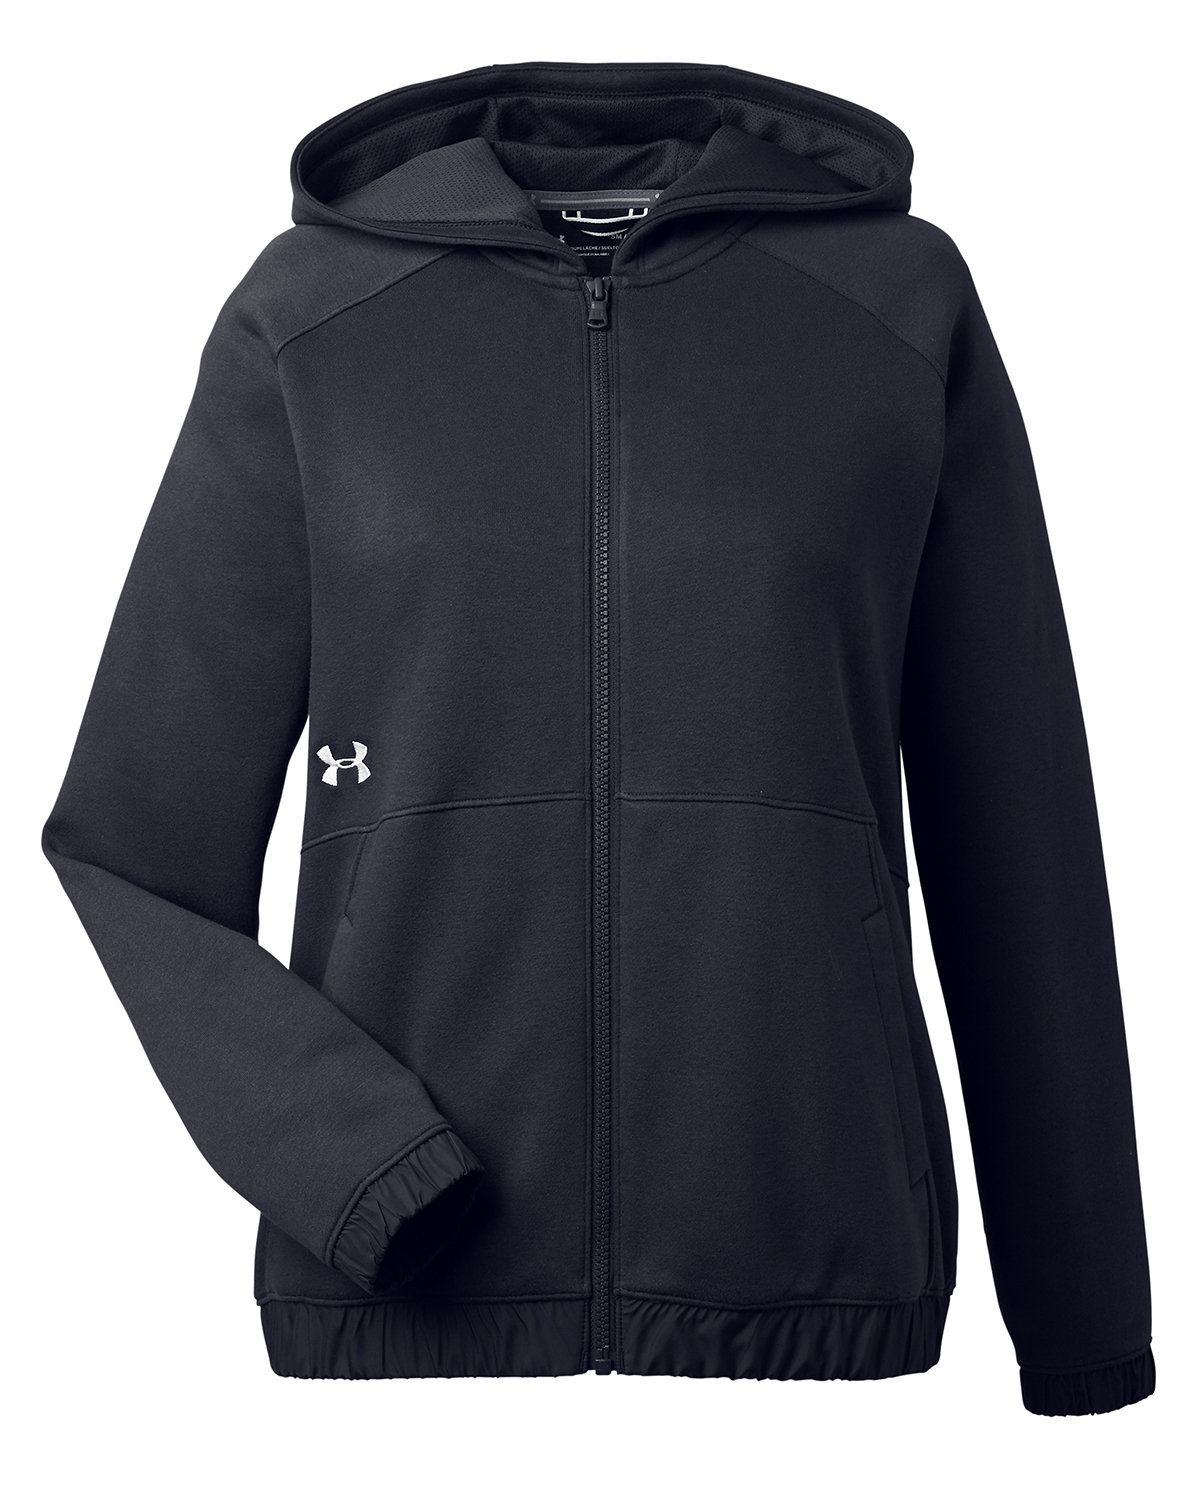 Branded Under Armour Ladies’ Hustle Full-Zip Hooded Sweatshirt Black/White